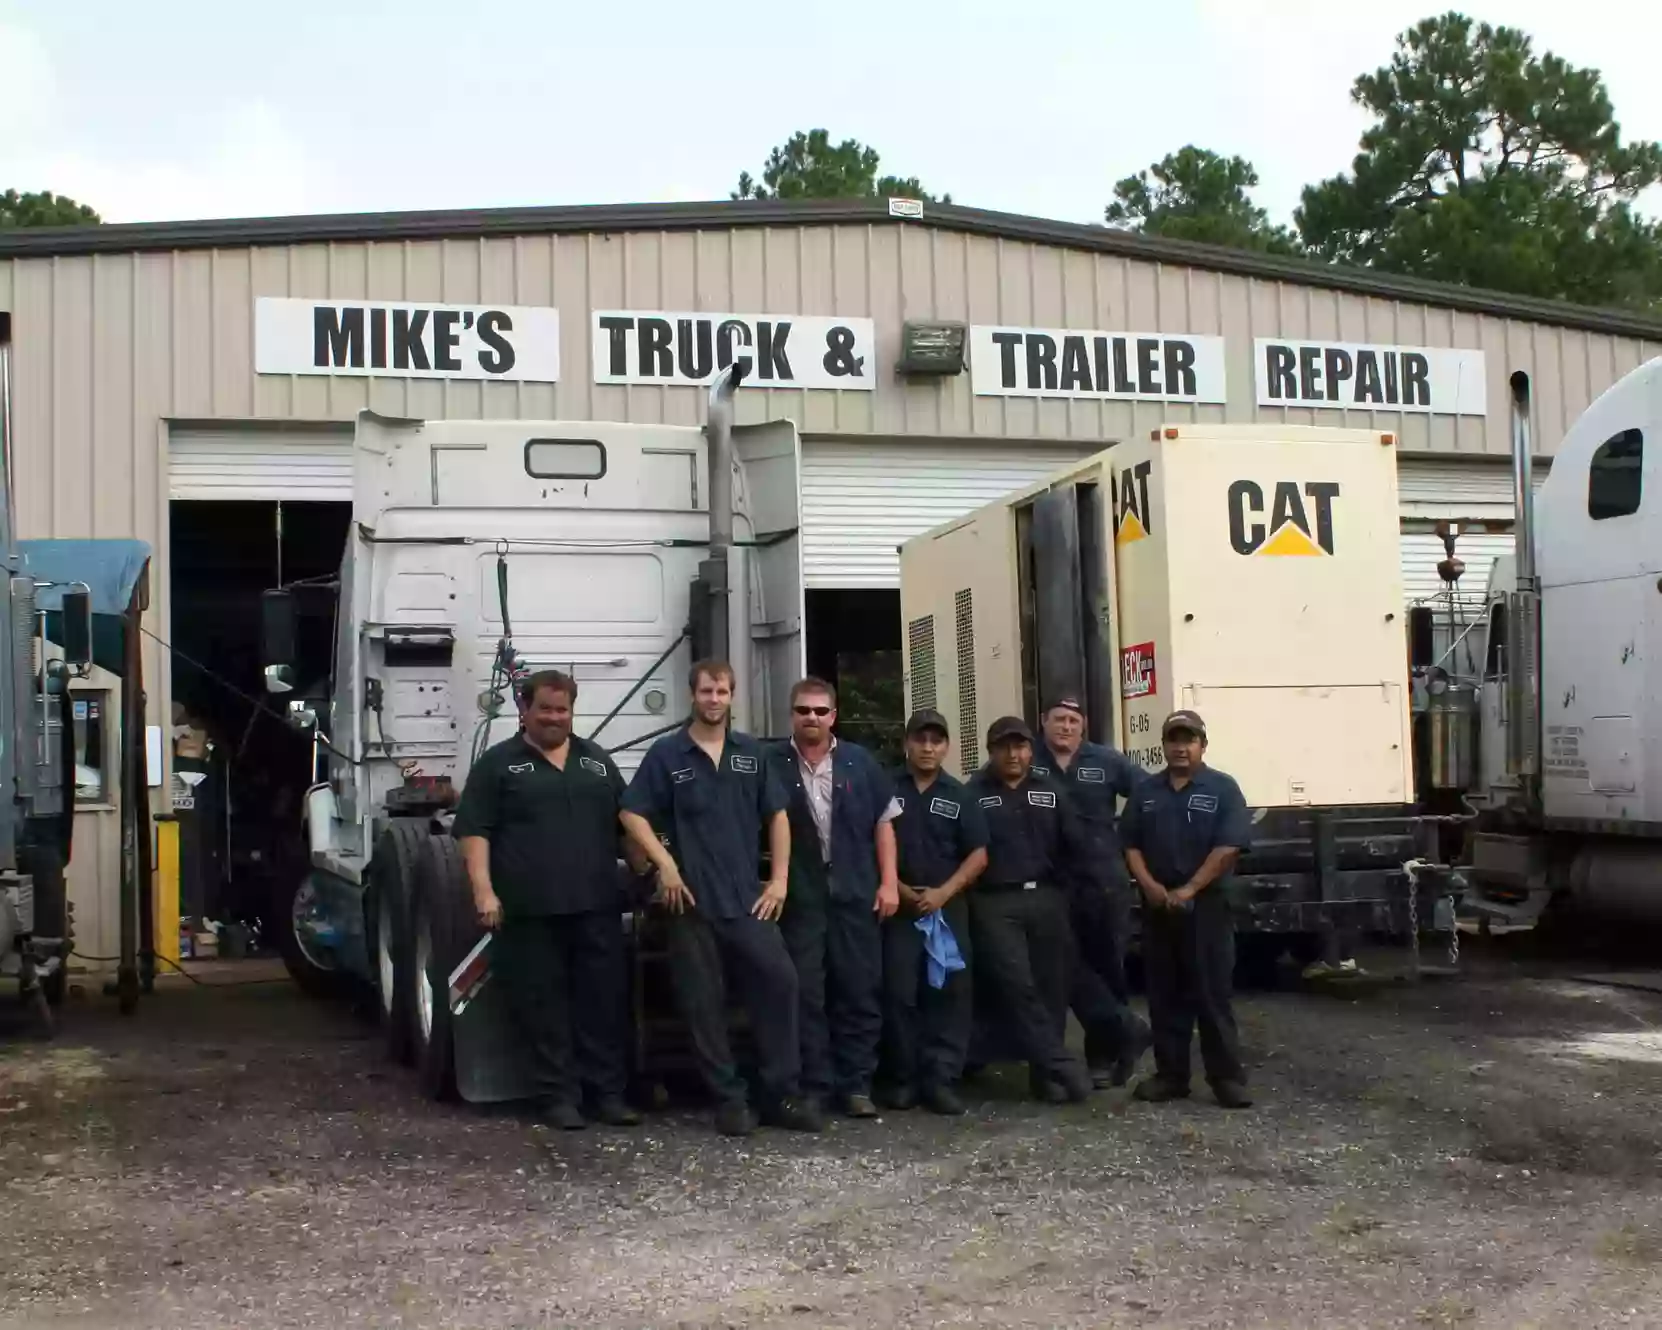 Mike's Truck & Trailer Repair